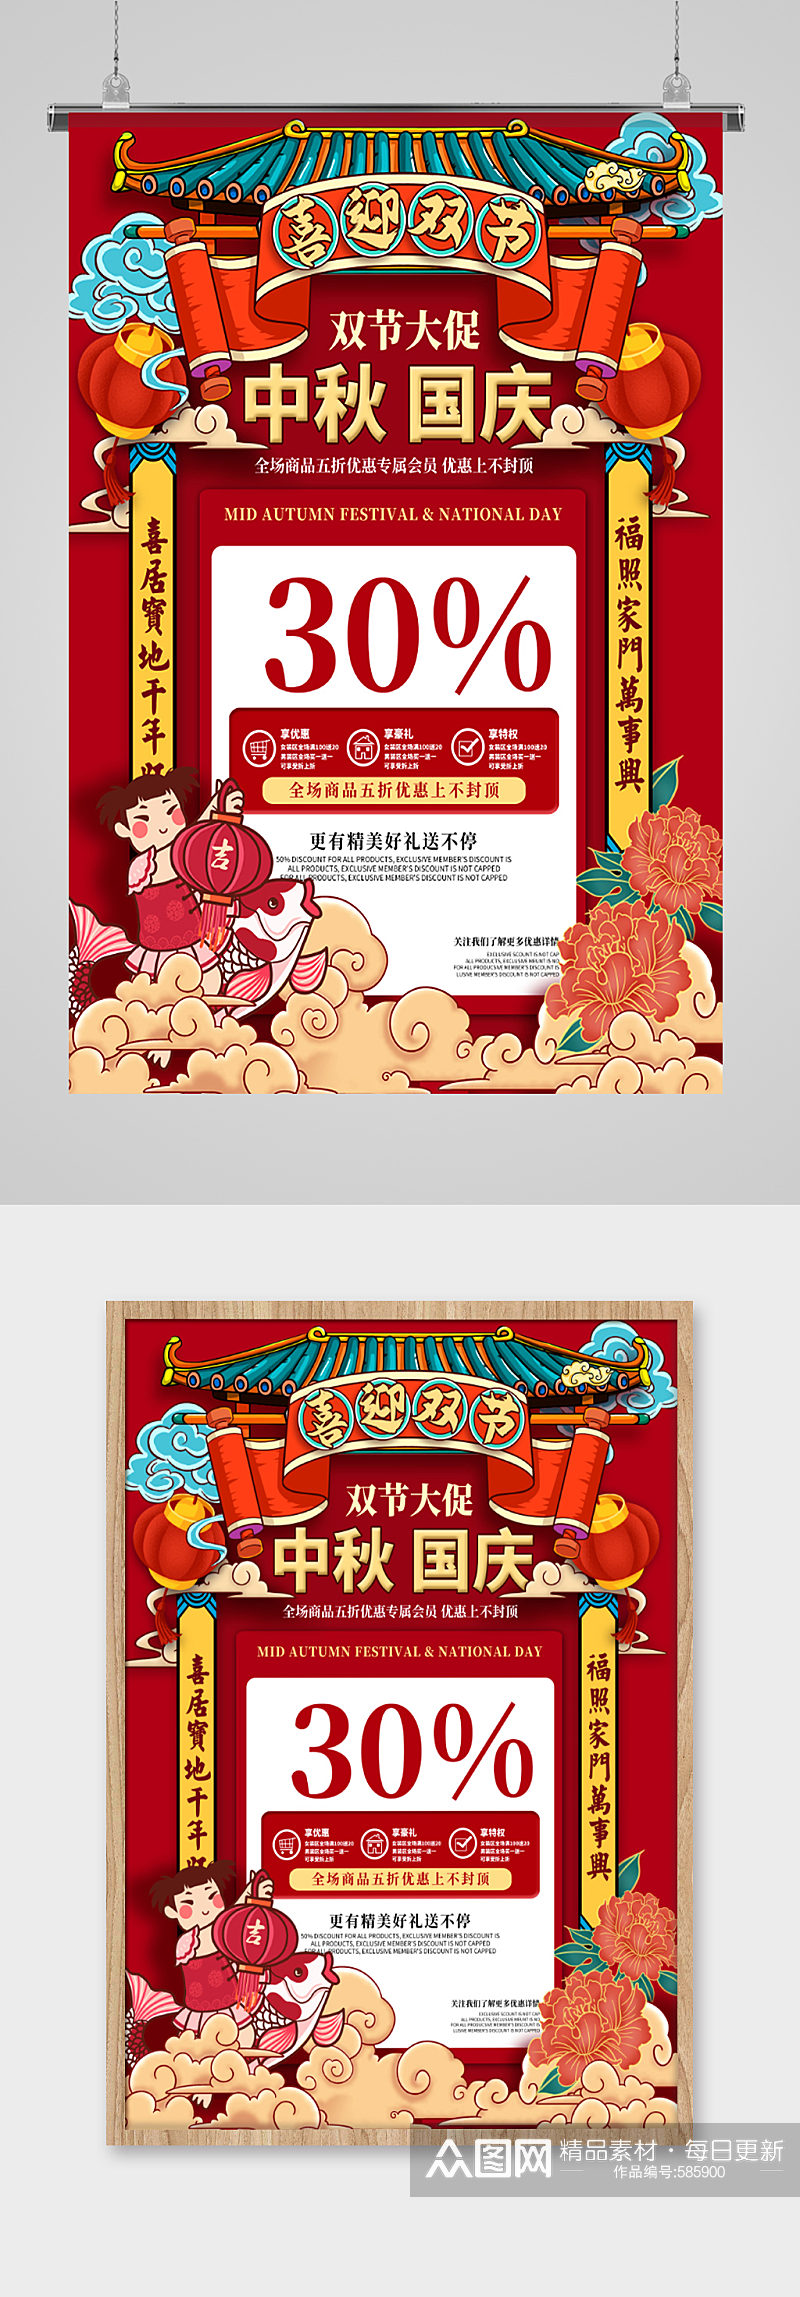 中秋国庆双节大促手绘插画风海报素材